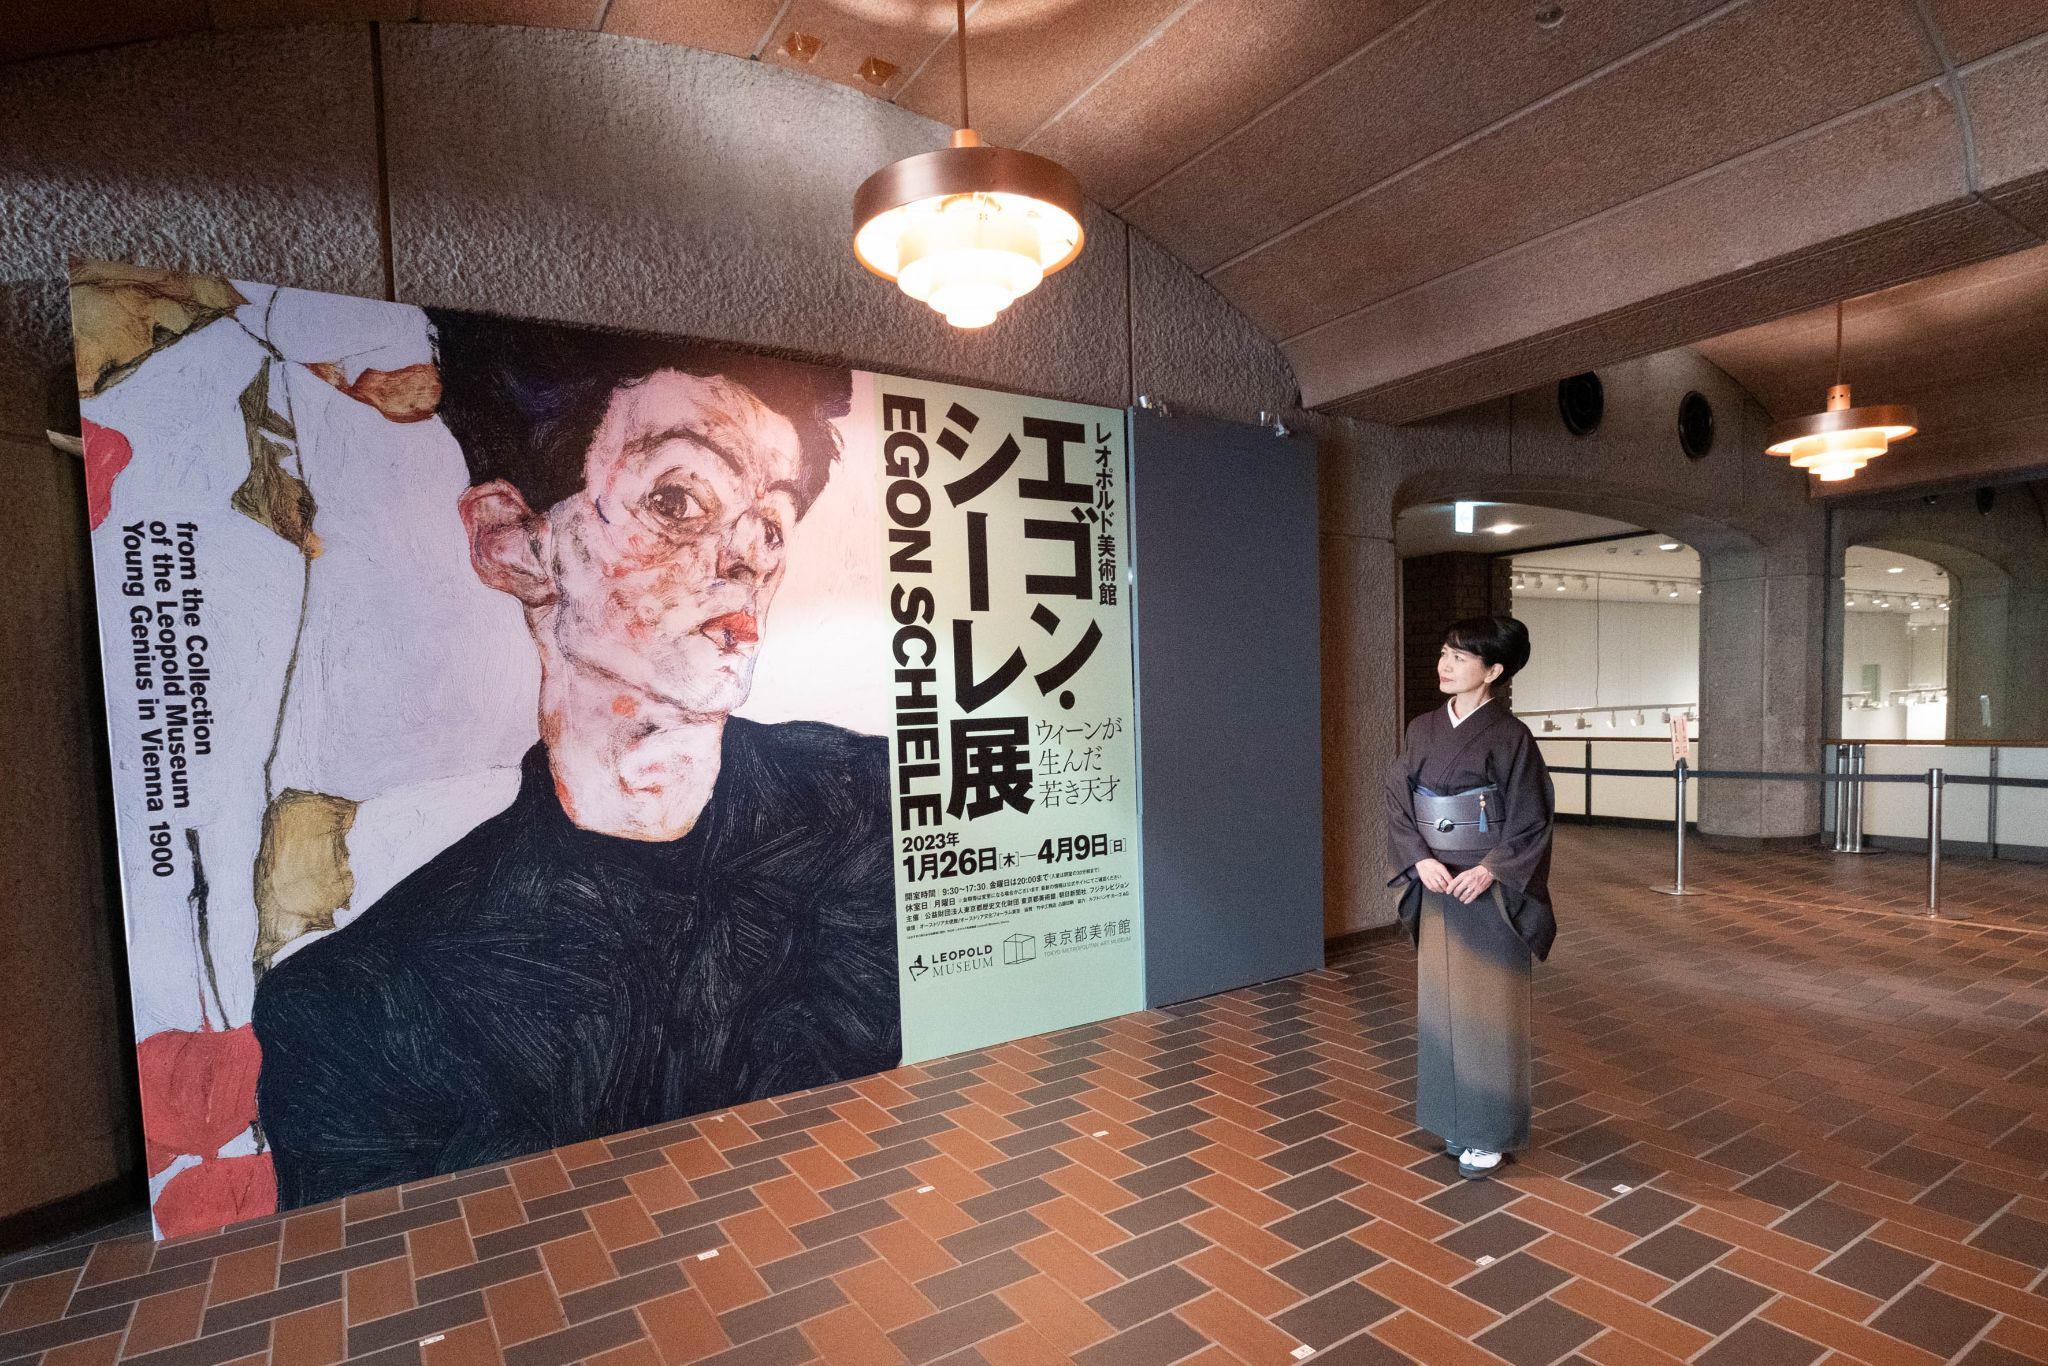 レオポルド美術館 エゴン・シーレ展 ウィーンが生んだ若き天才』東京都